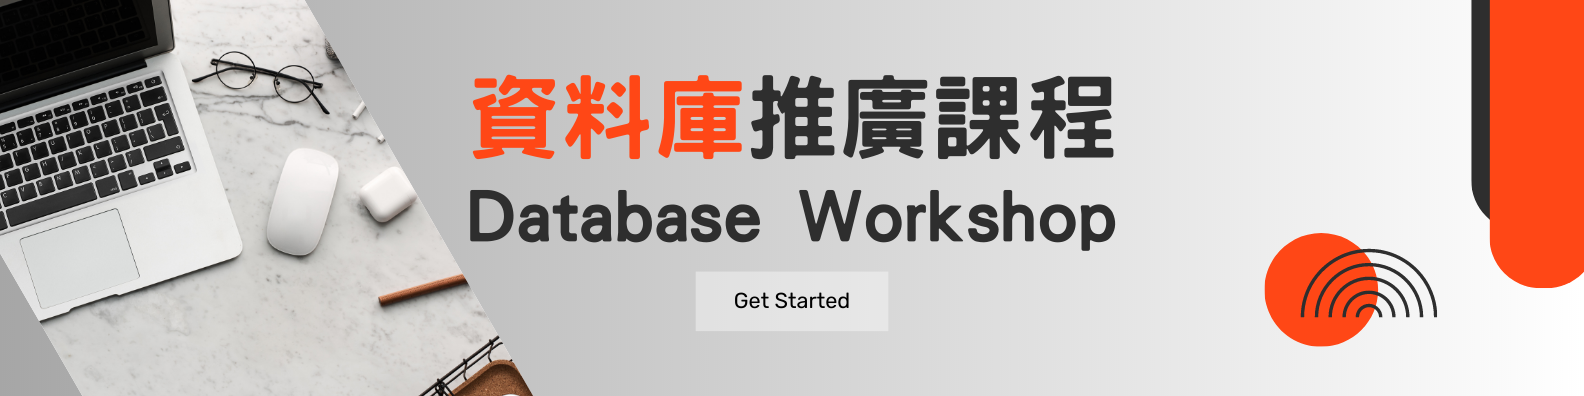 Database Workshop